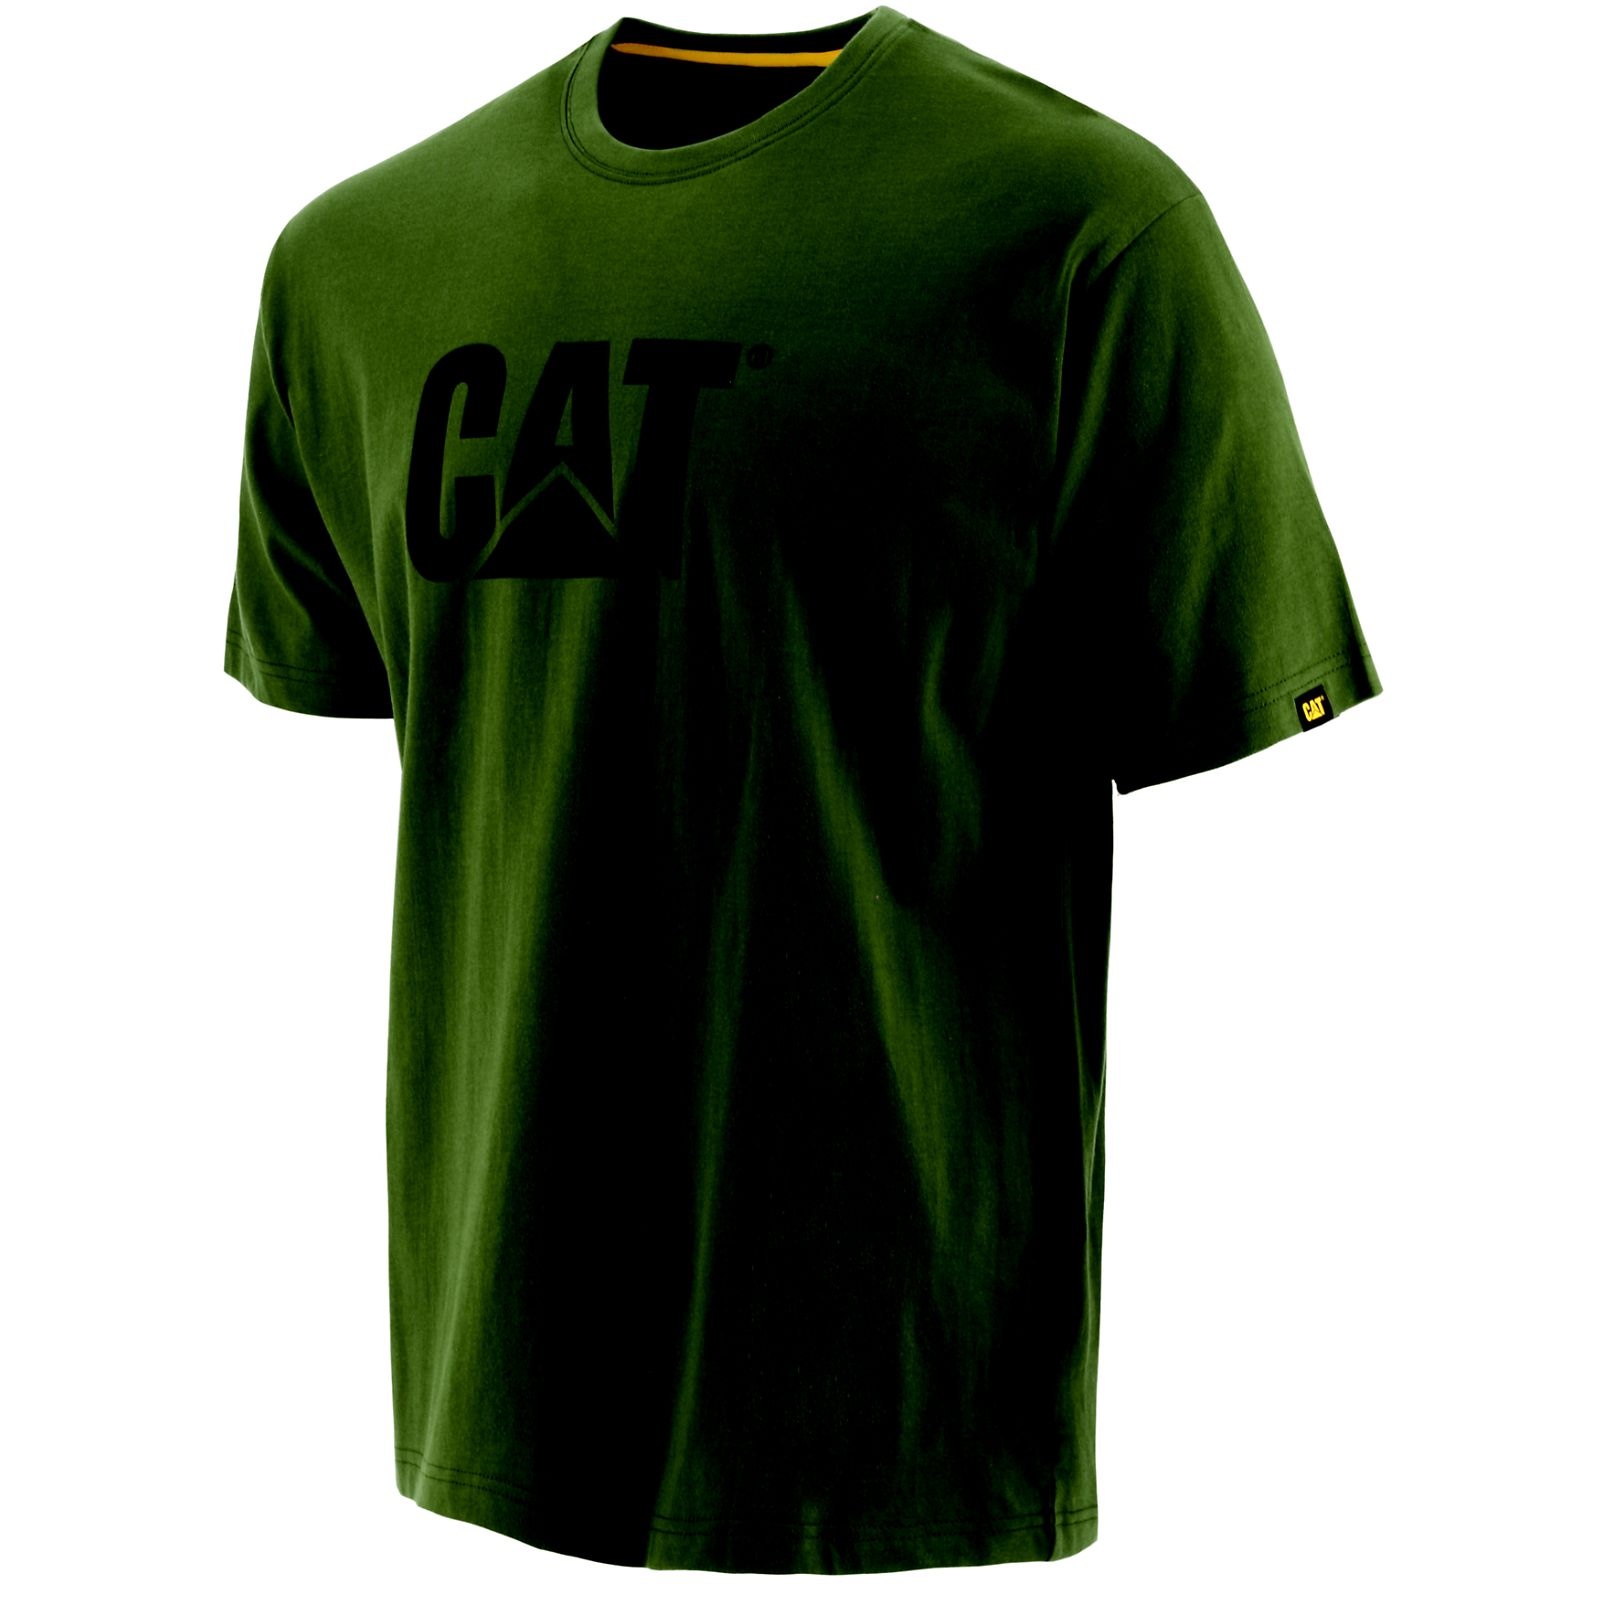 Green Caterpillar Trademark Men's T-Shirts | Cat-107639